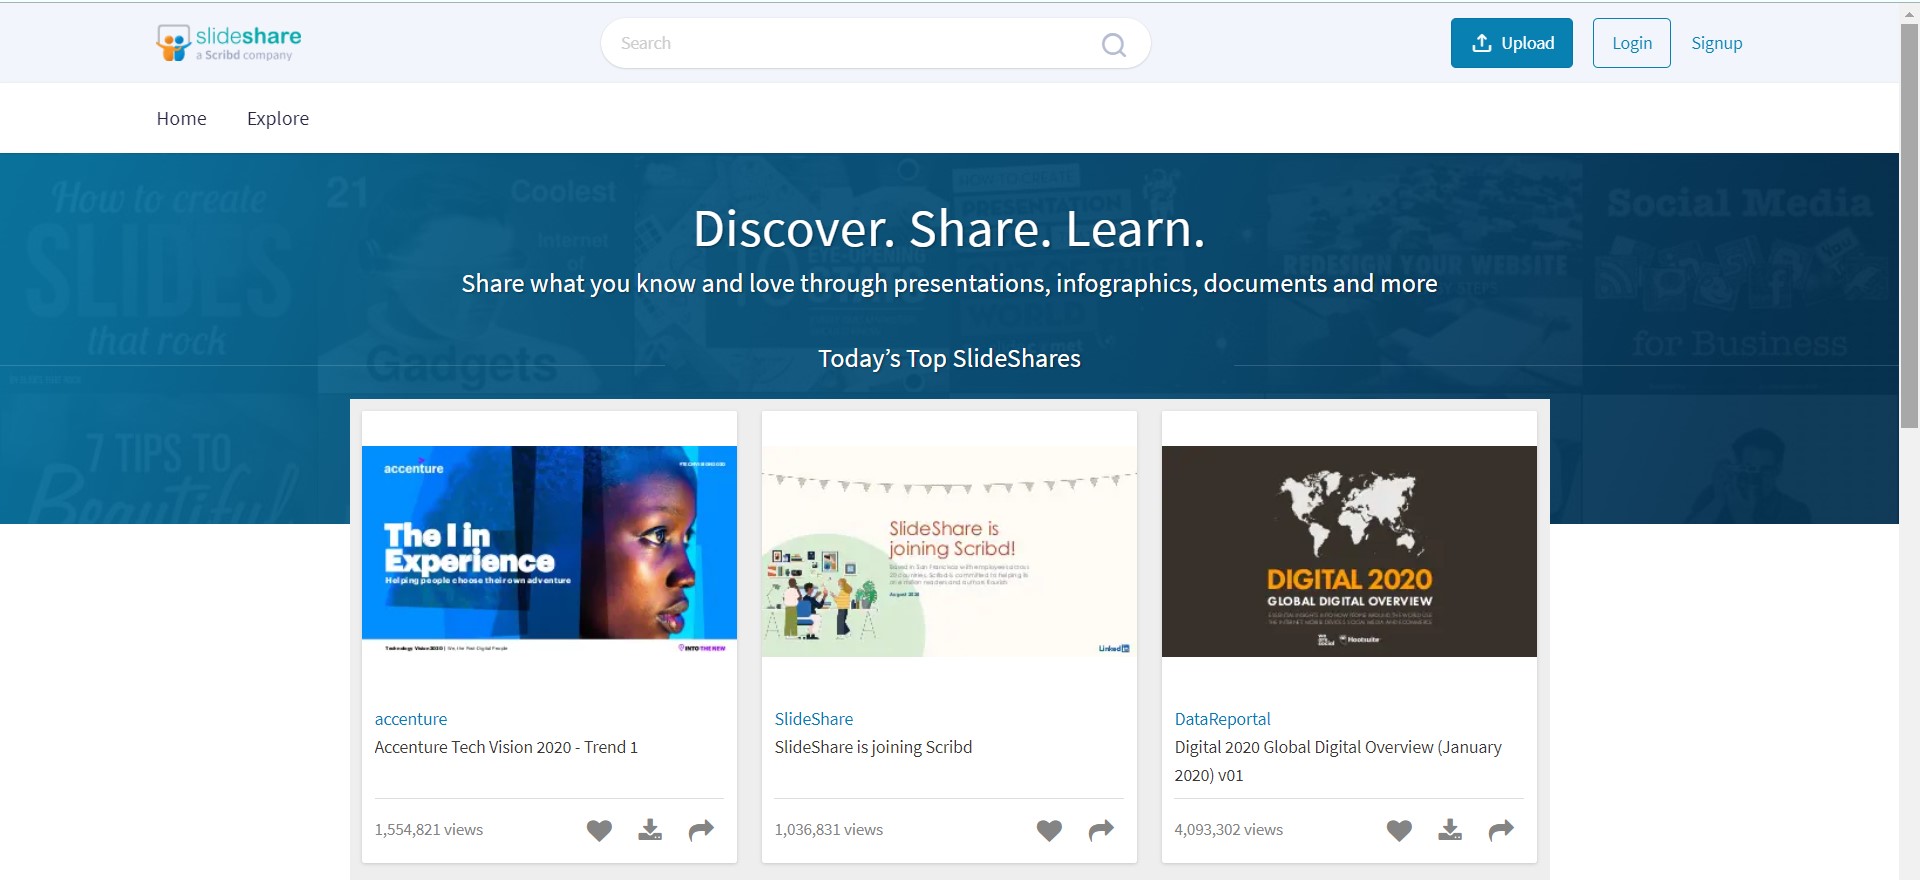 SlideShare homepage